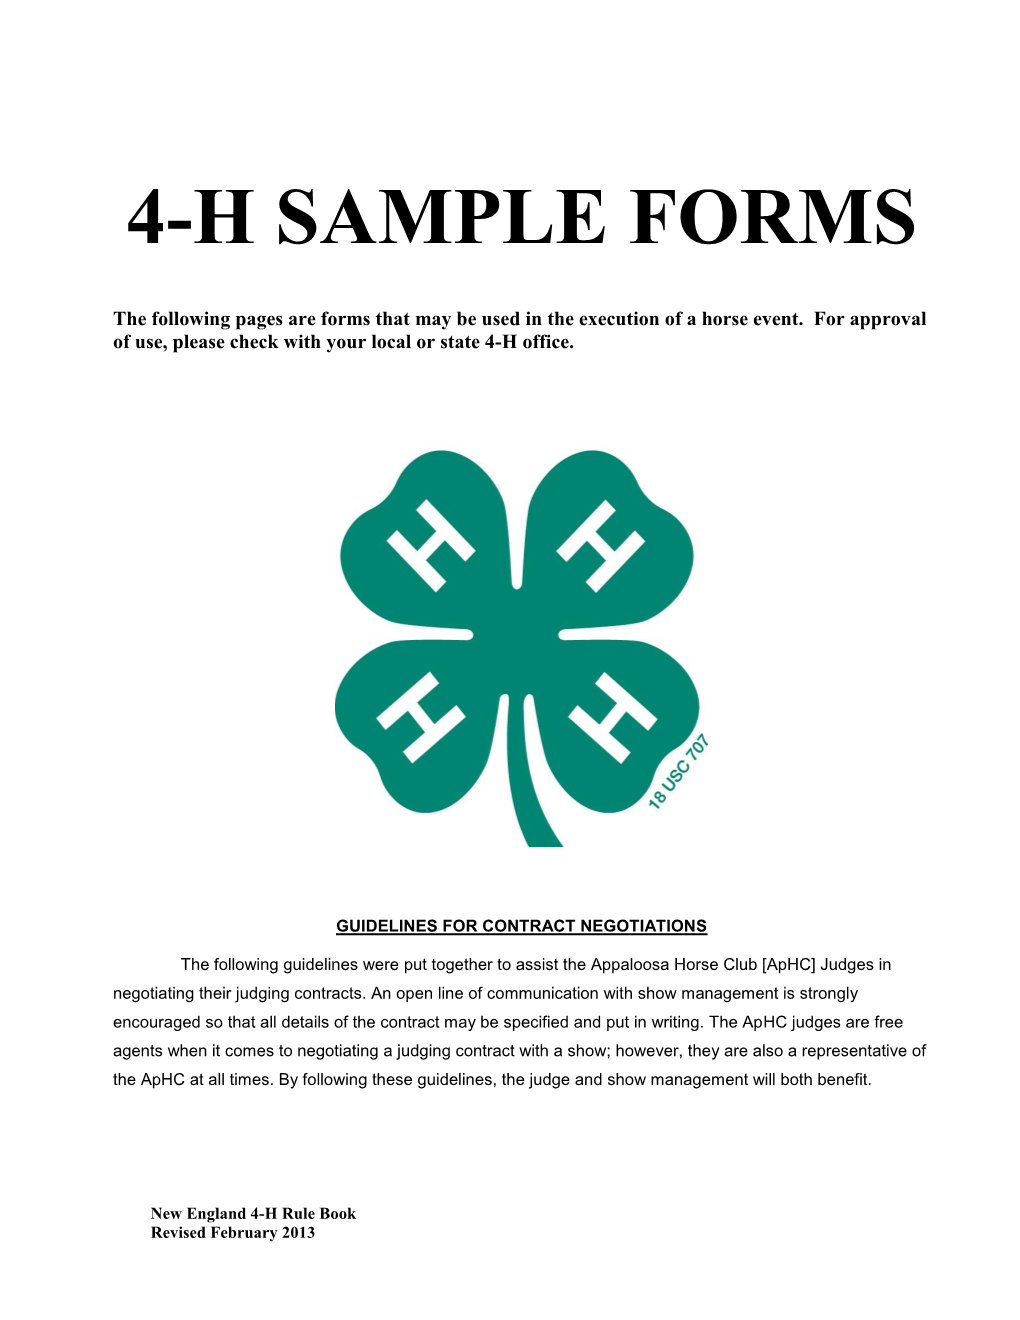 4H Sample Forms DocsLib